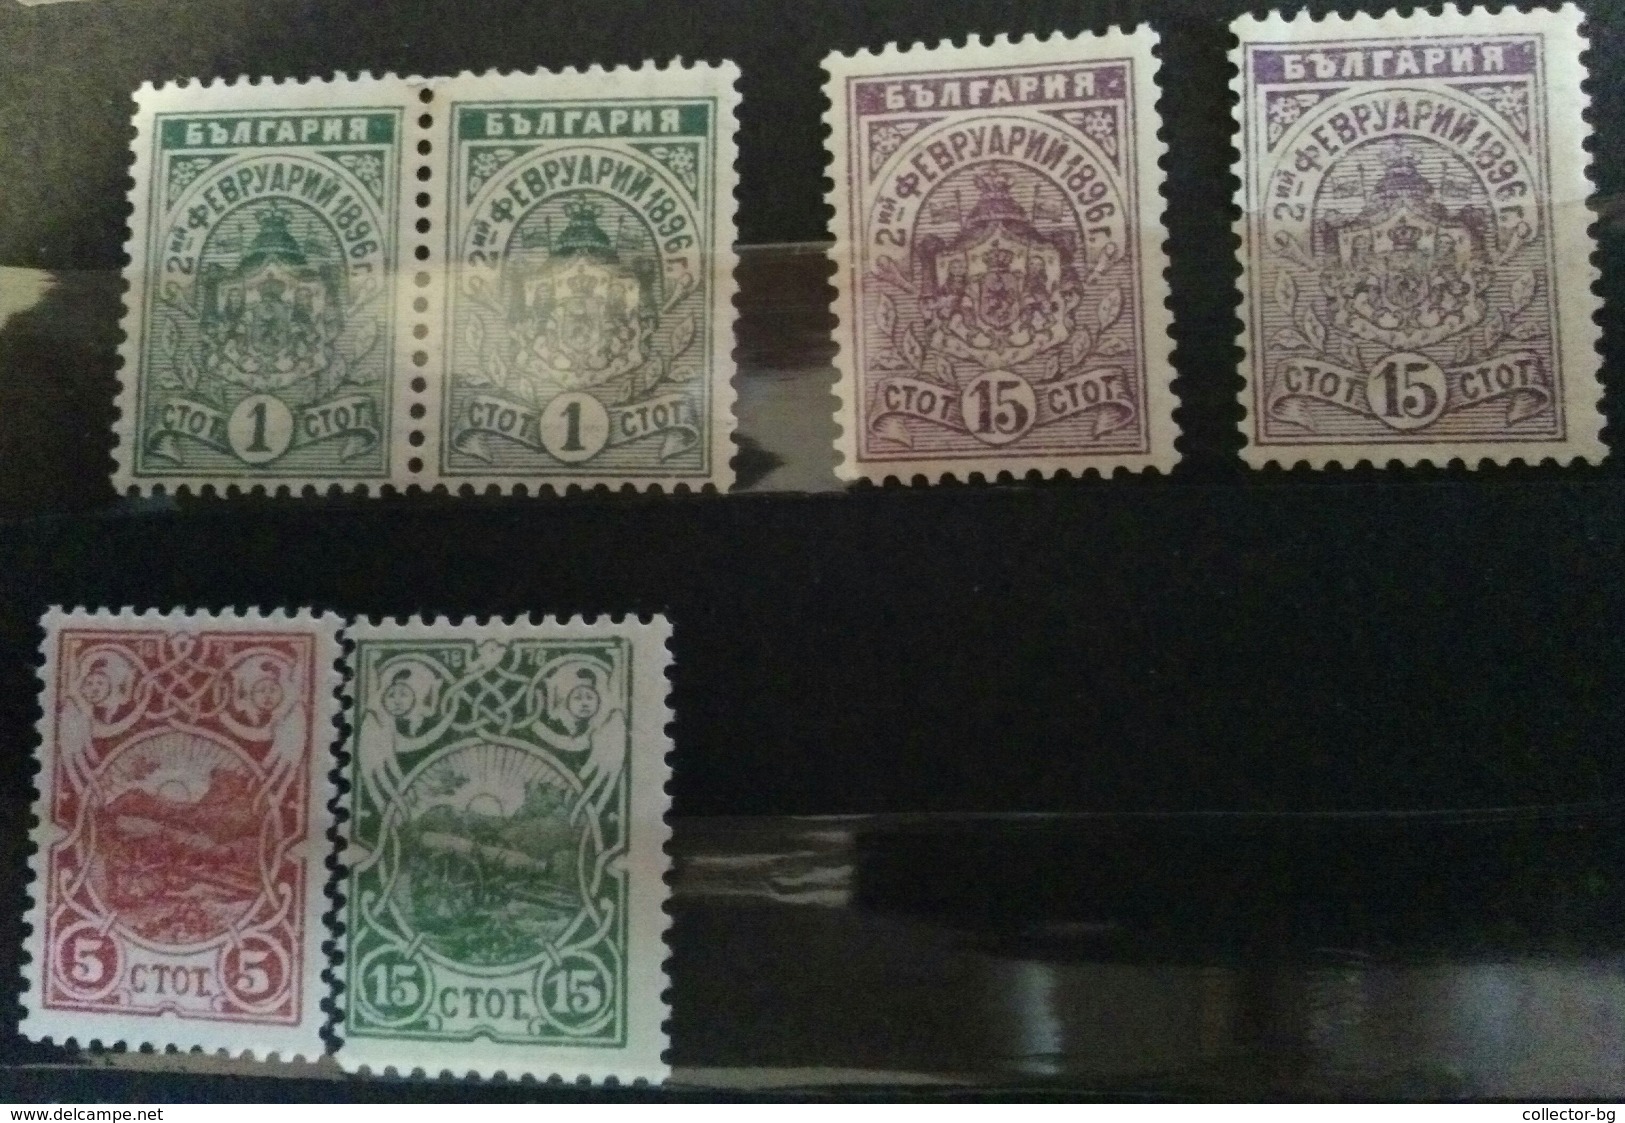 RARE SET LOT KINGDOM BULGARIA 1876 5+15 STOTINKI+1+15 1896 UNUSED/MINT/NEUF STAMP TIMBRE - Unused Stamps